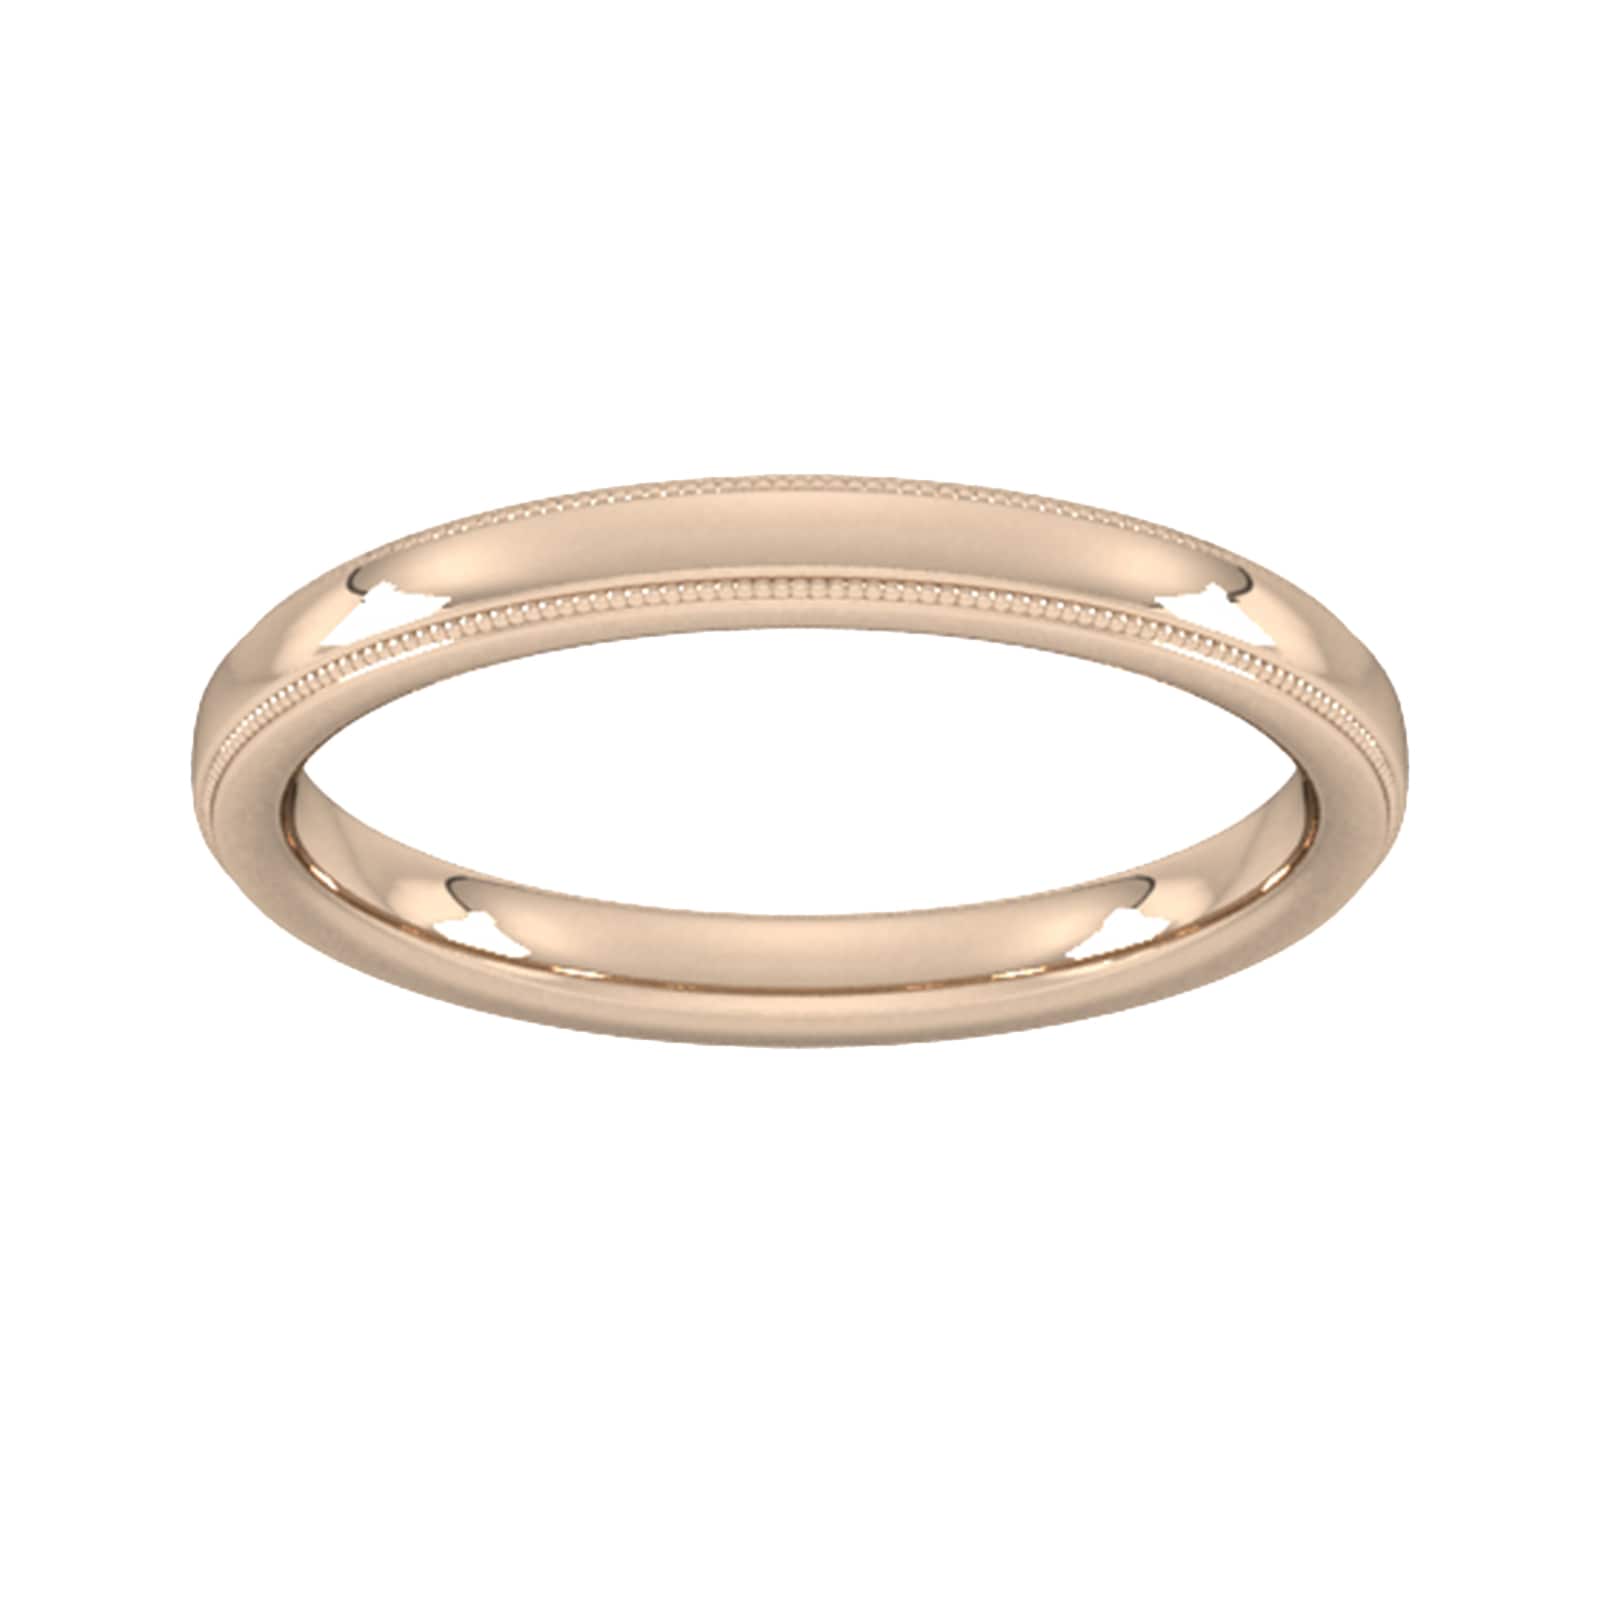 2.5mm Slight Court Heavy Milgrain Edge Wedding Ring In 9 Carat Rose Gold - Ring Size M